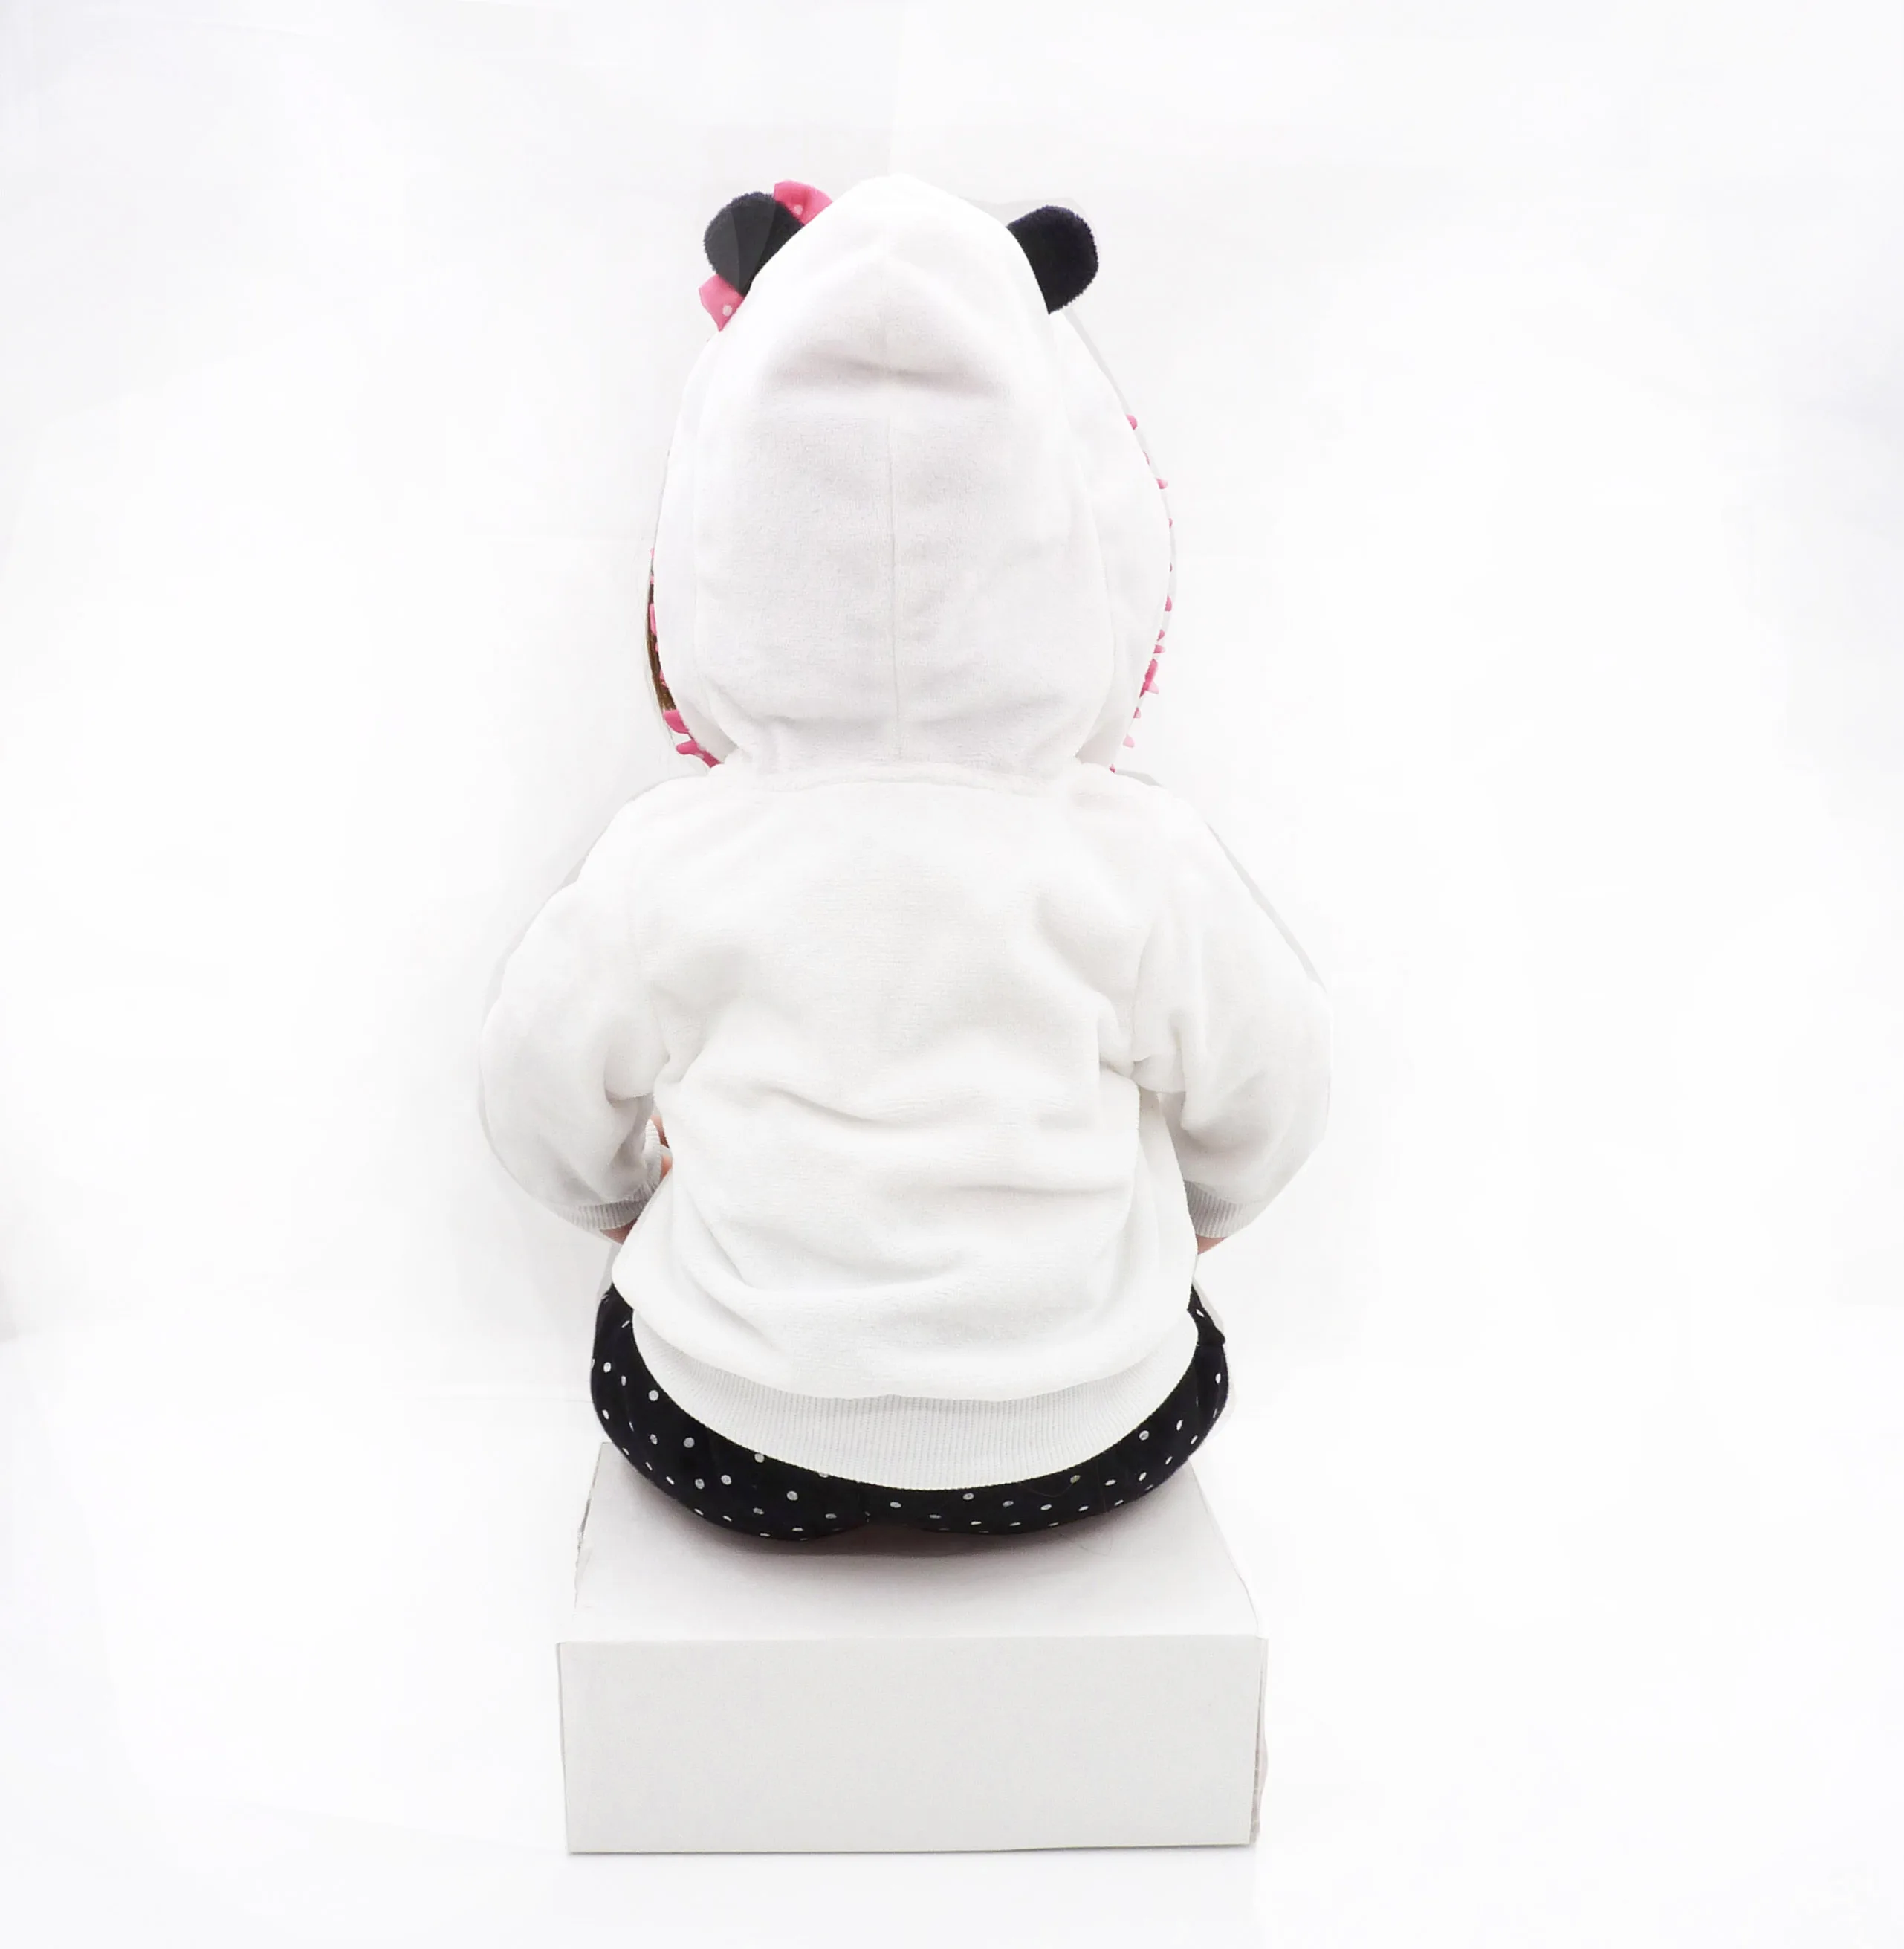 47 см/58 см кукла милая панда костюм Реалистичная для малышей и новорожденных кукла, чтобы дать детям лучший подарок на день рождения Рождество сюрприз